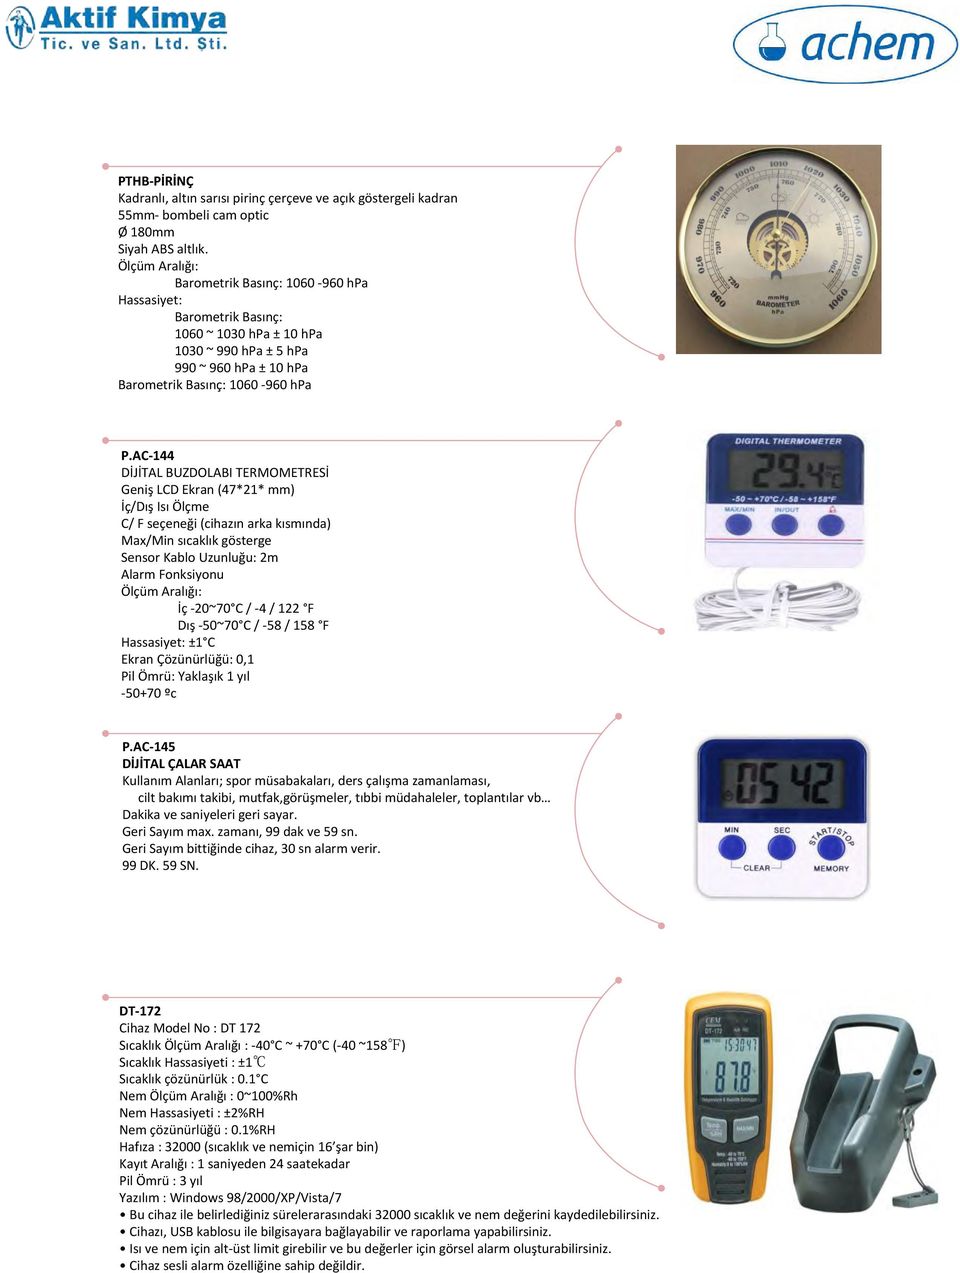 AC-144 DİJİTAL BUZDOLABI TERMOMETRESİ Geniş LCD Ekran (47*21* mm) İç/Dış Isı Ölçme C/ F seçeneği (cihazın arka kısmında) Max/Min sıcaklık gösterge Sensor Kablo Uzunluğu: 2m Alarm Fonksiyonu İç -20~70